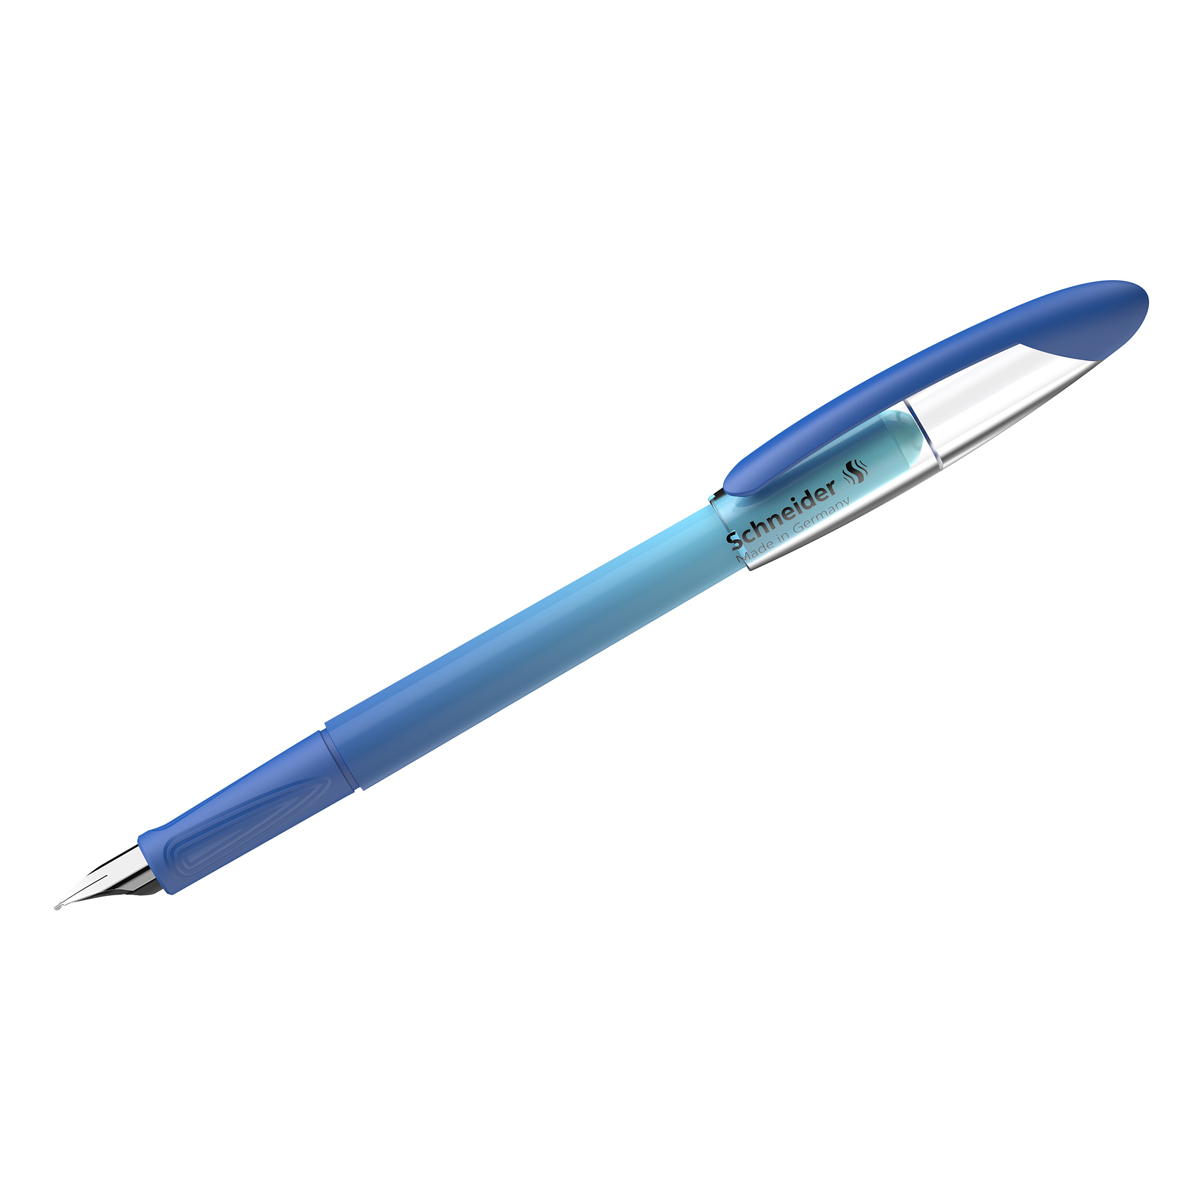 Ручка перьевая Schneider Voyage caribbean синяя, 1 картридж, грип, сине-голубой корпус